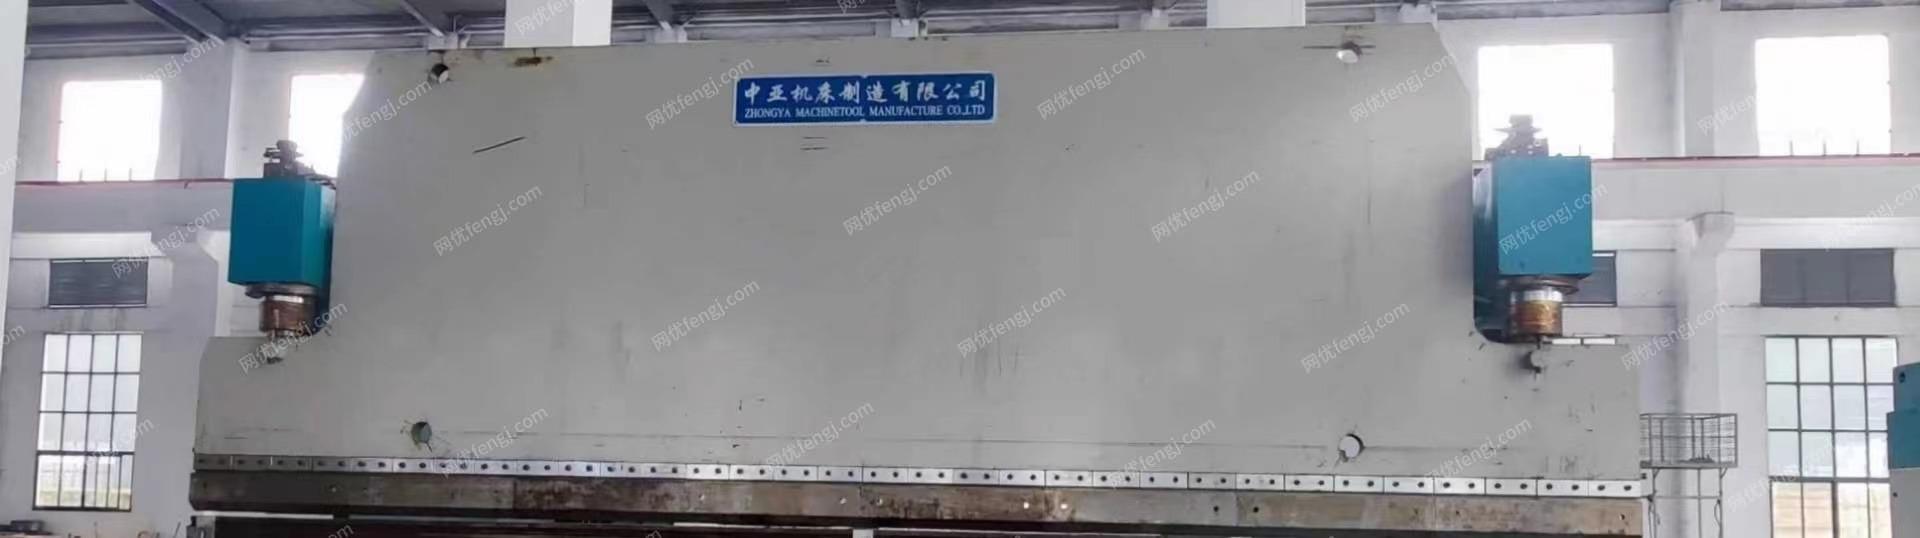 广西柳州出售8米剪板机 8米400吨折弯机